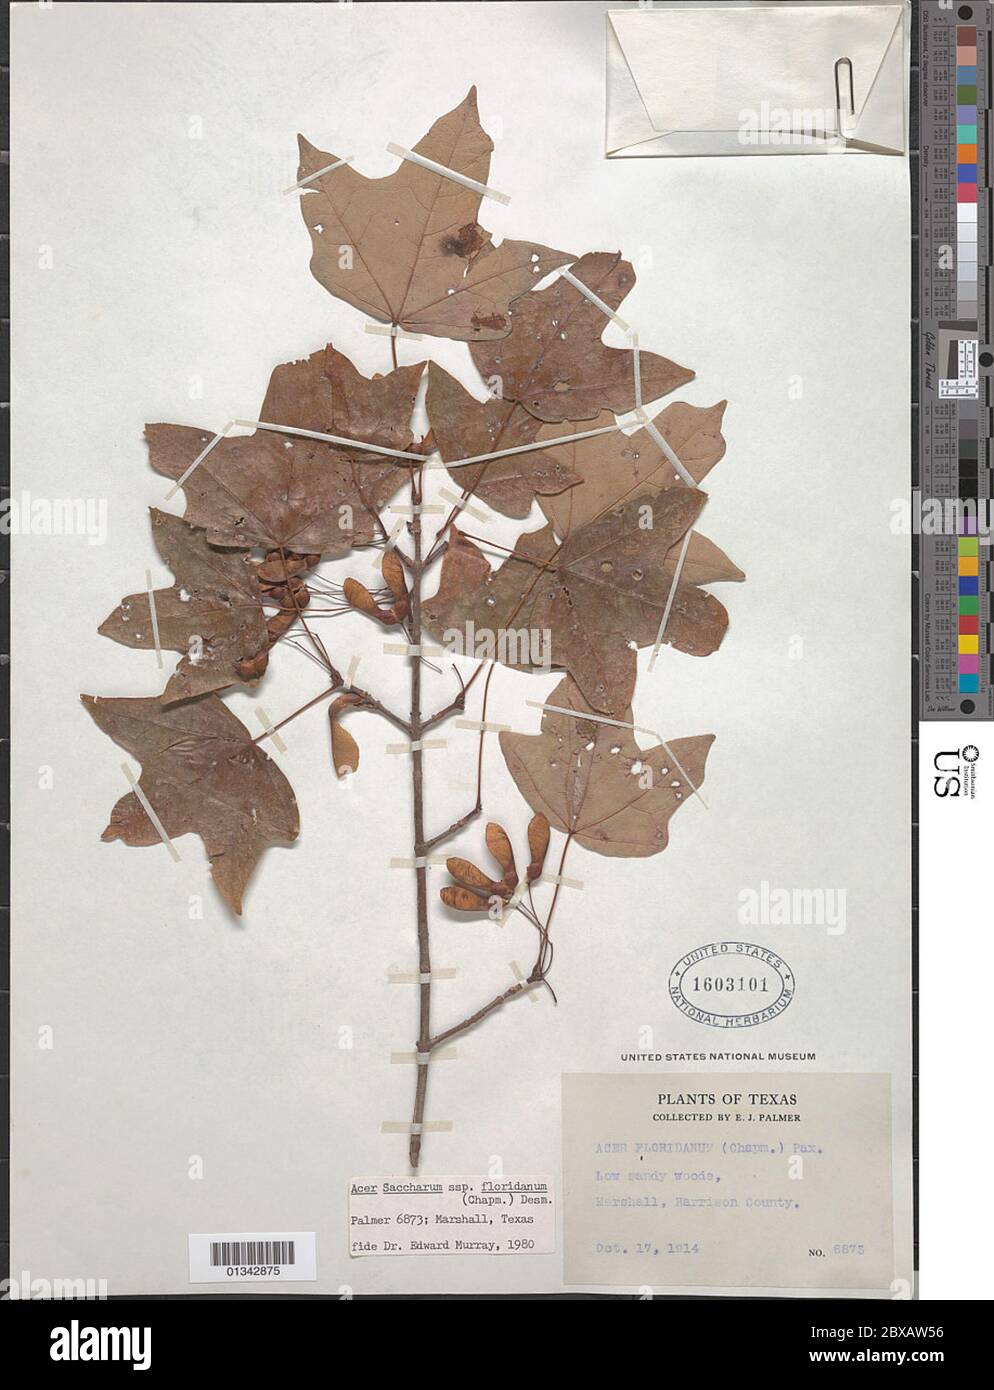 Acer floridanum Banque de photographies et d'images à haute résolution -  Alamy